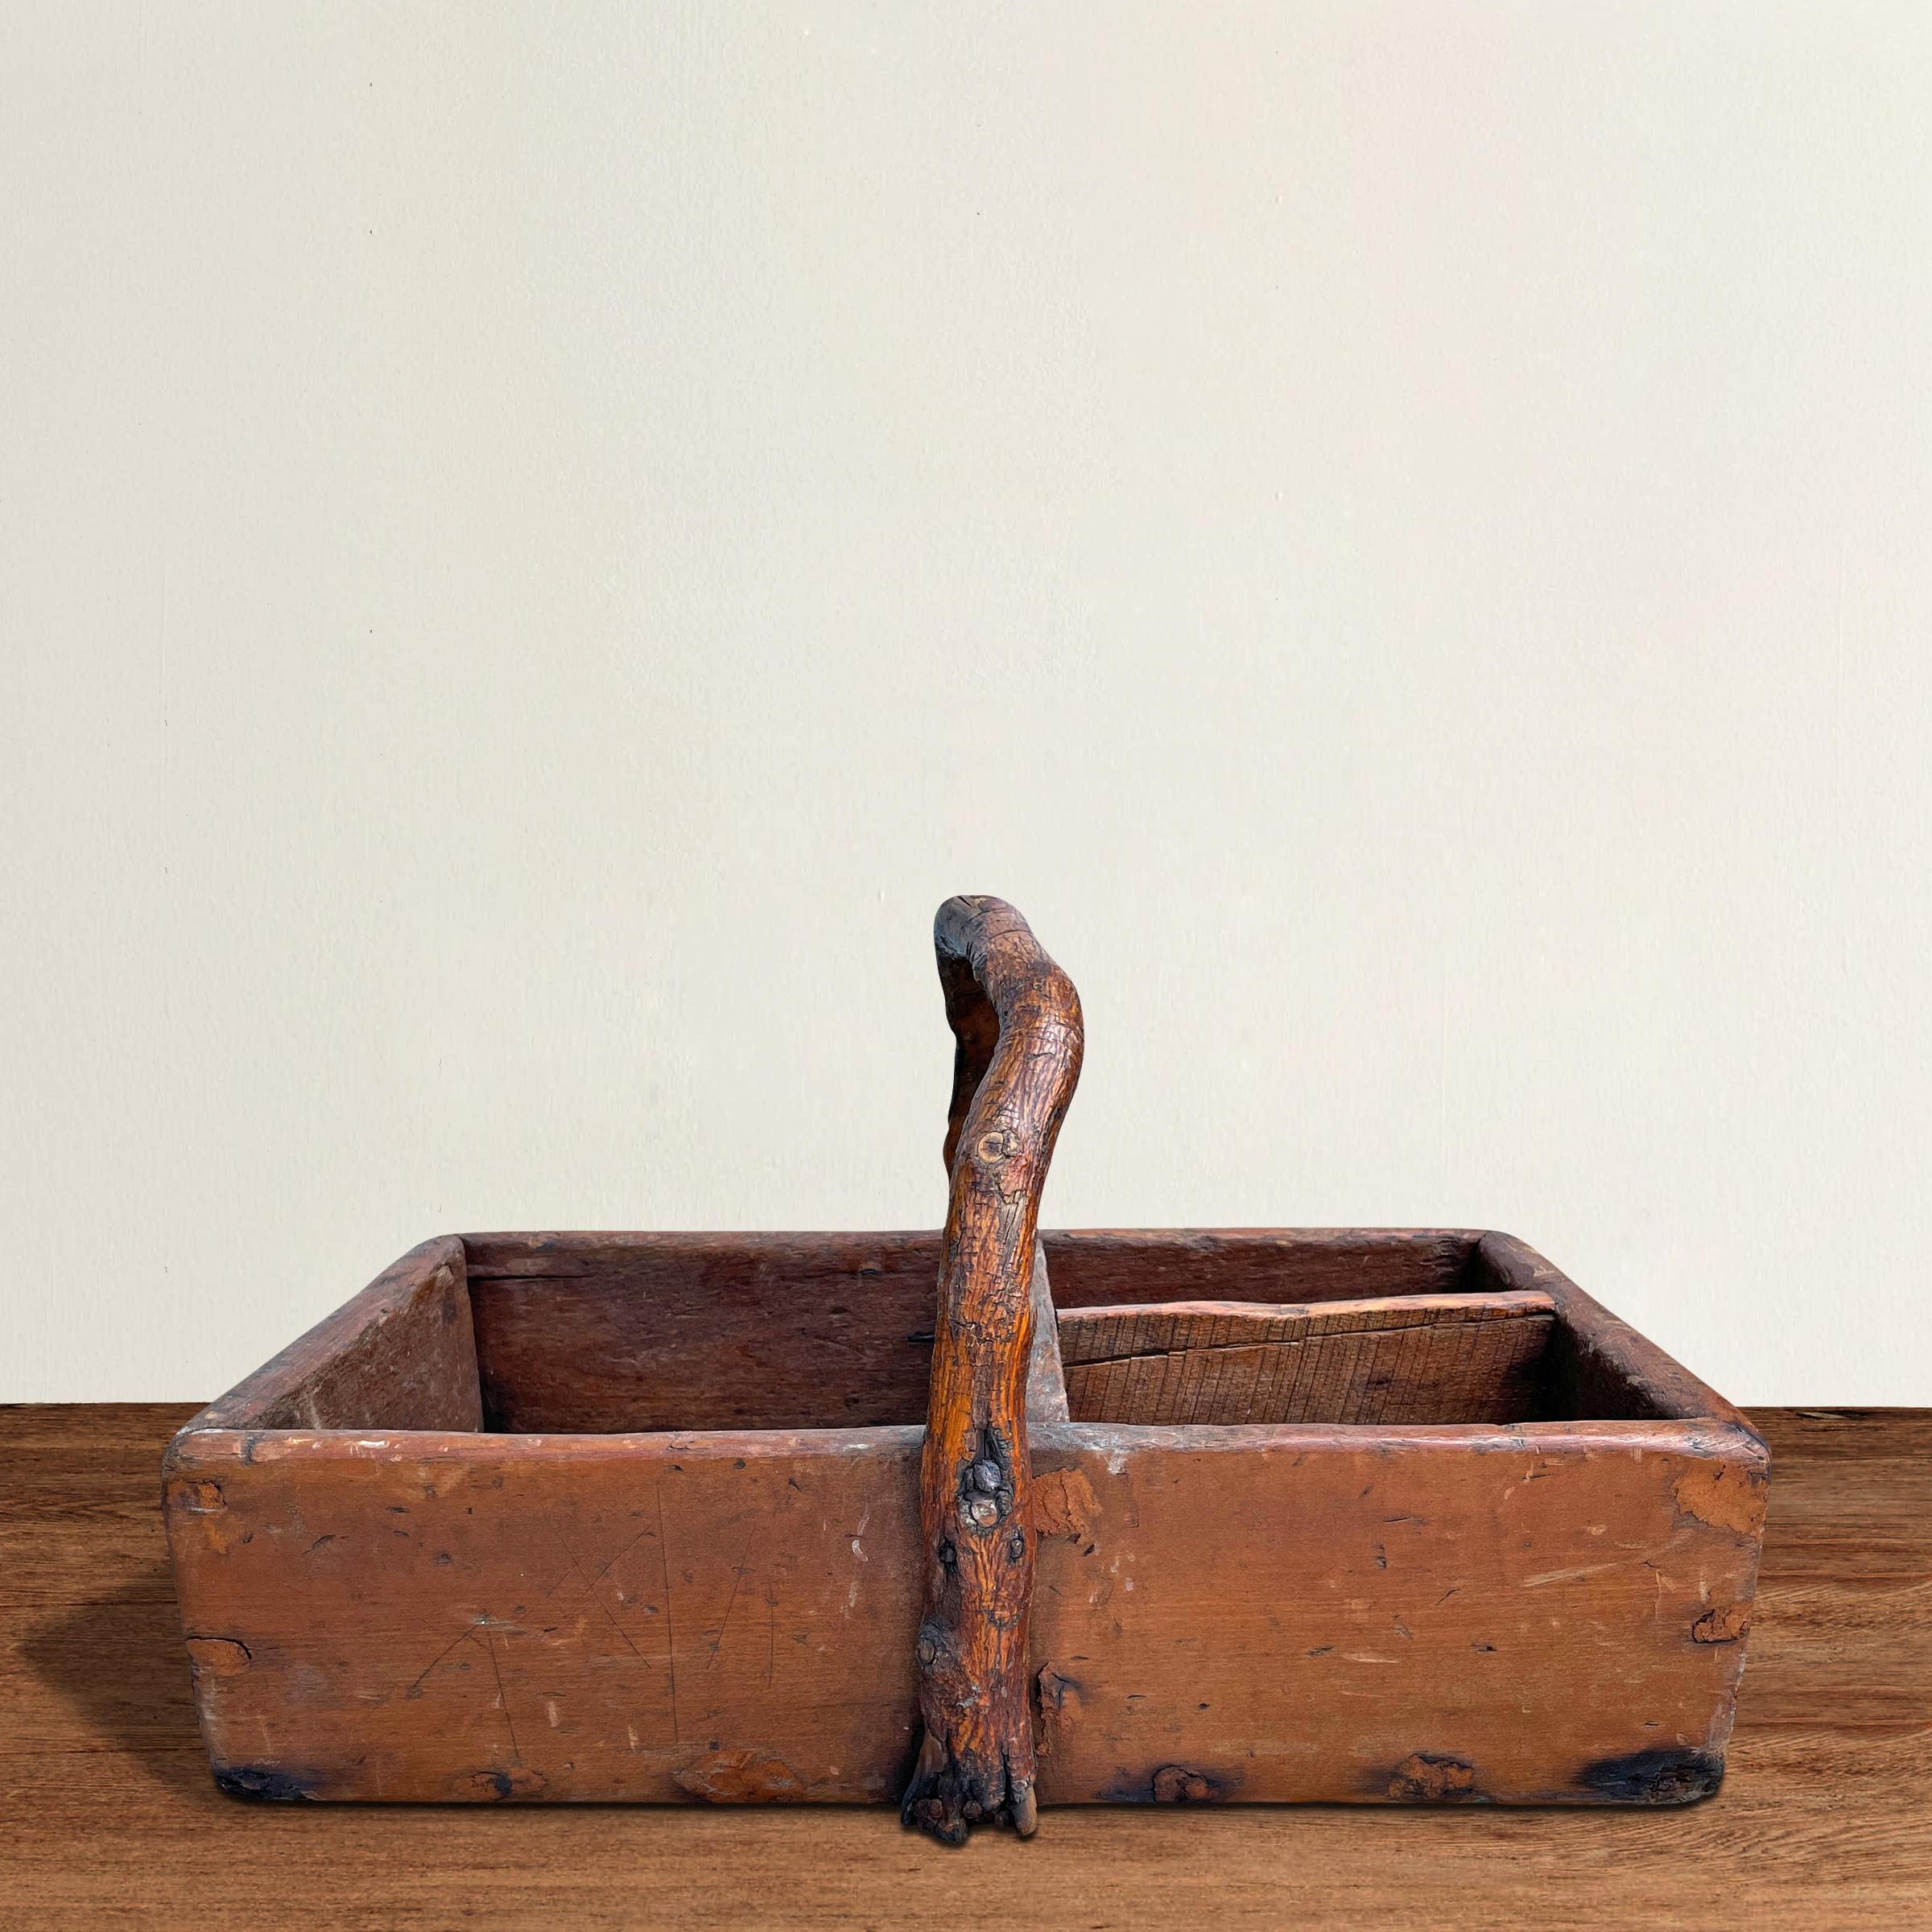 Un charmant caddy ou boîte à outils américain du 19ème siècle avec la meilleure poignée en bois de hickory naturel inspiré du wabi-sabi. Parfait pour contenir des serviettes, des couverts ou d'autres accessoires de table lors de votre prochaine